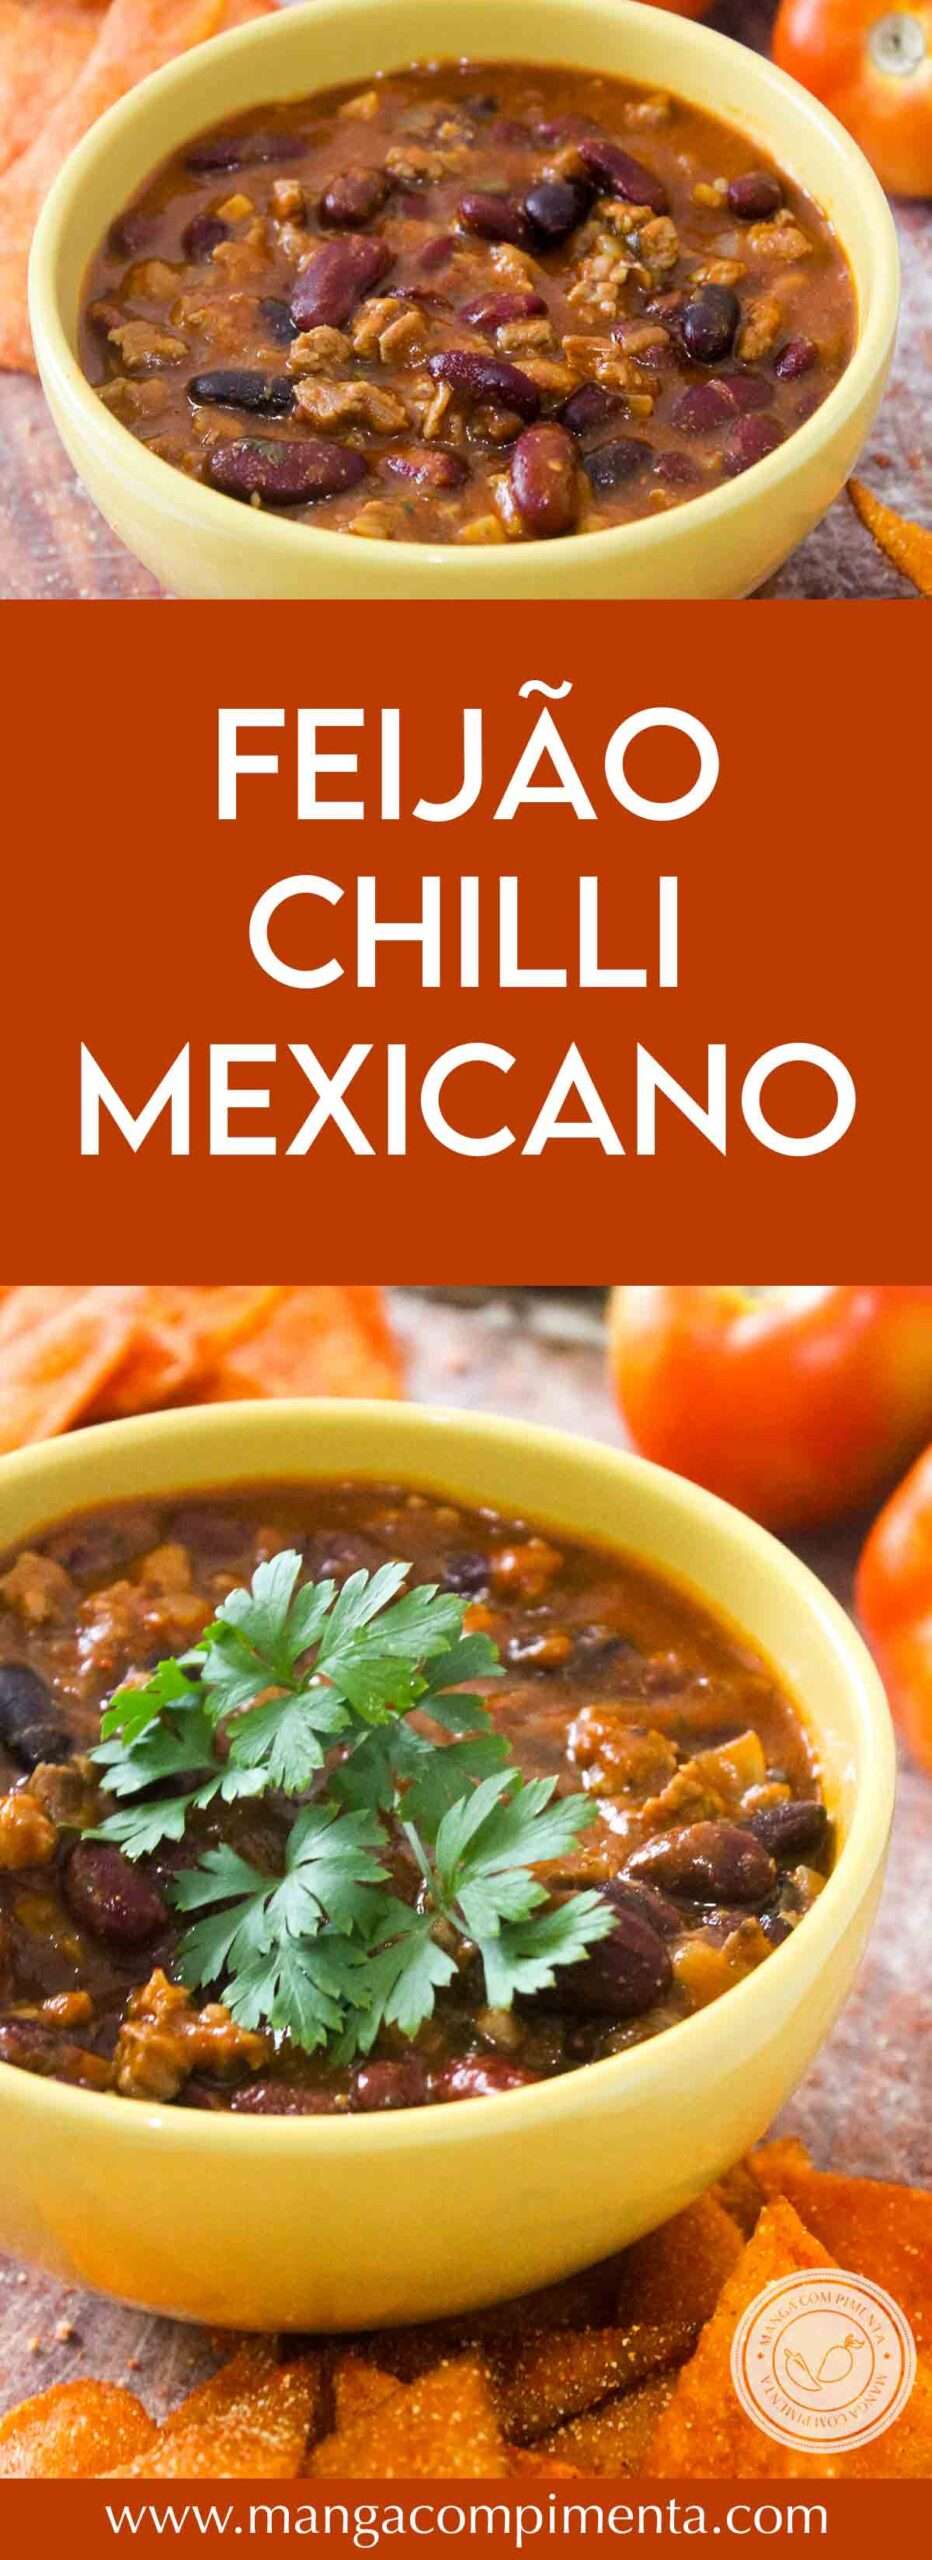 Receita de Chilli com Carne e Feijões Mexicanos - tenha um jantar com pratos calientes do México.